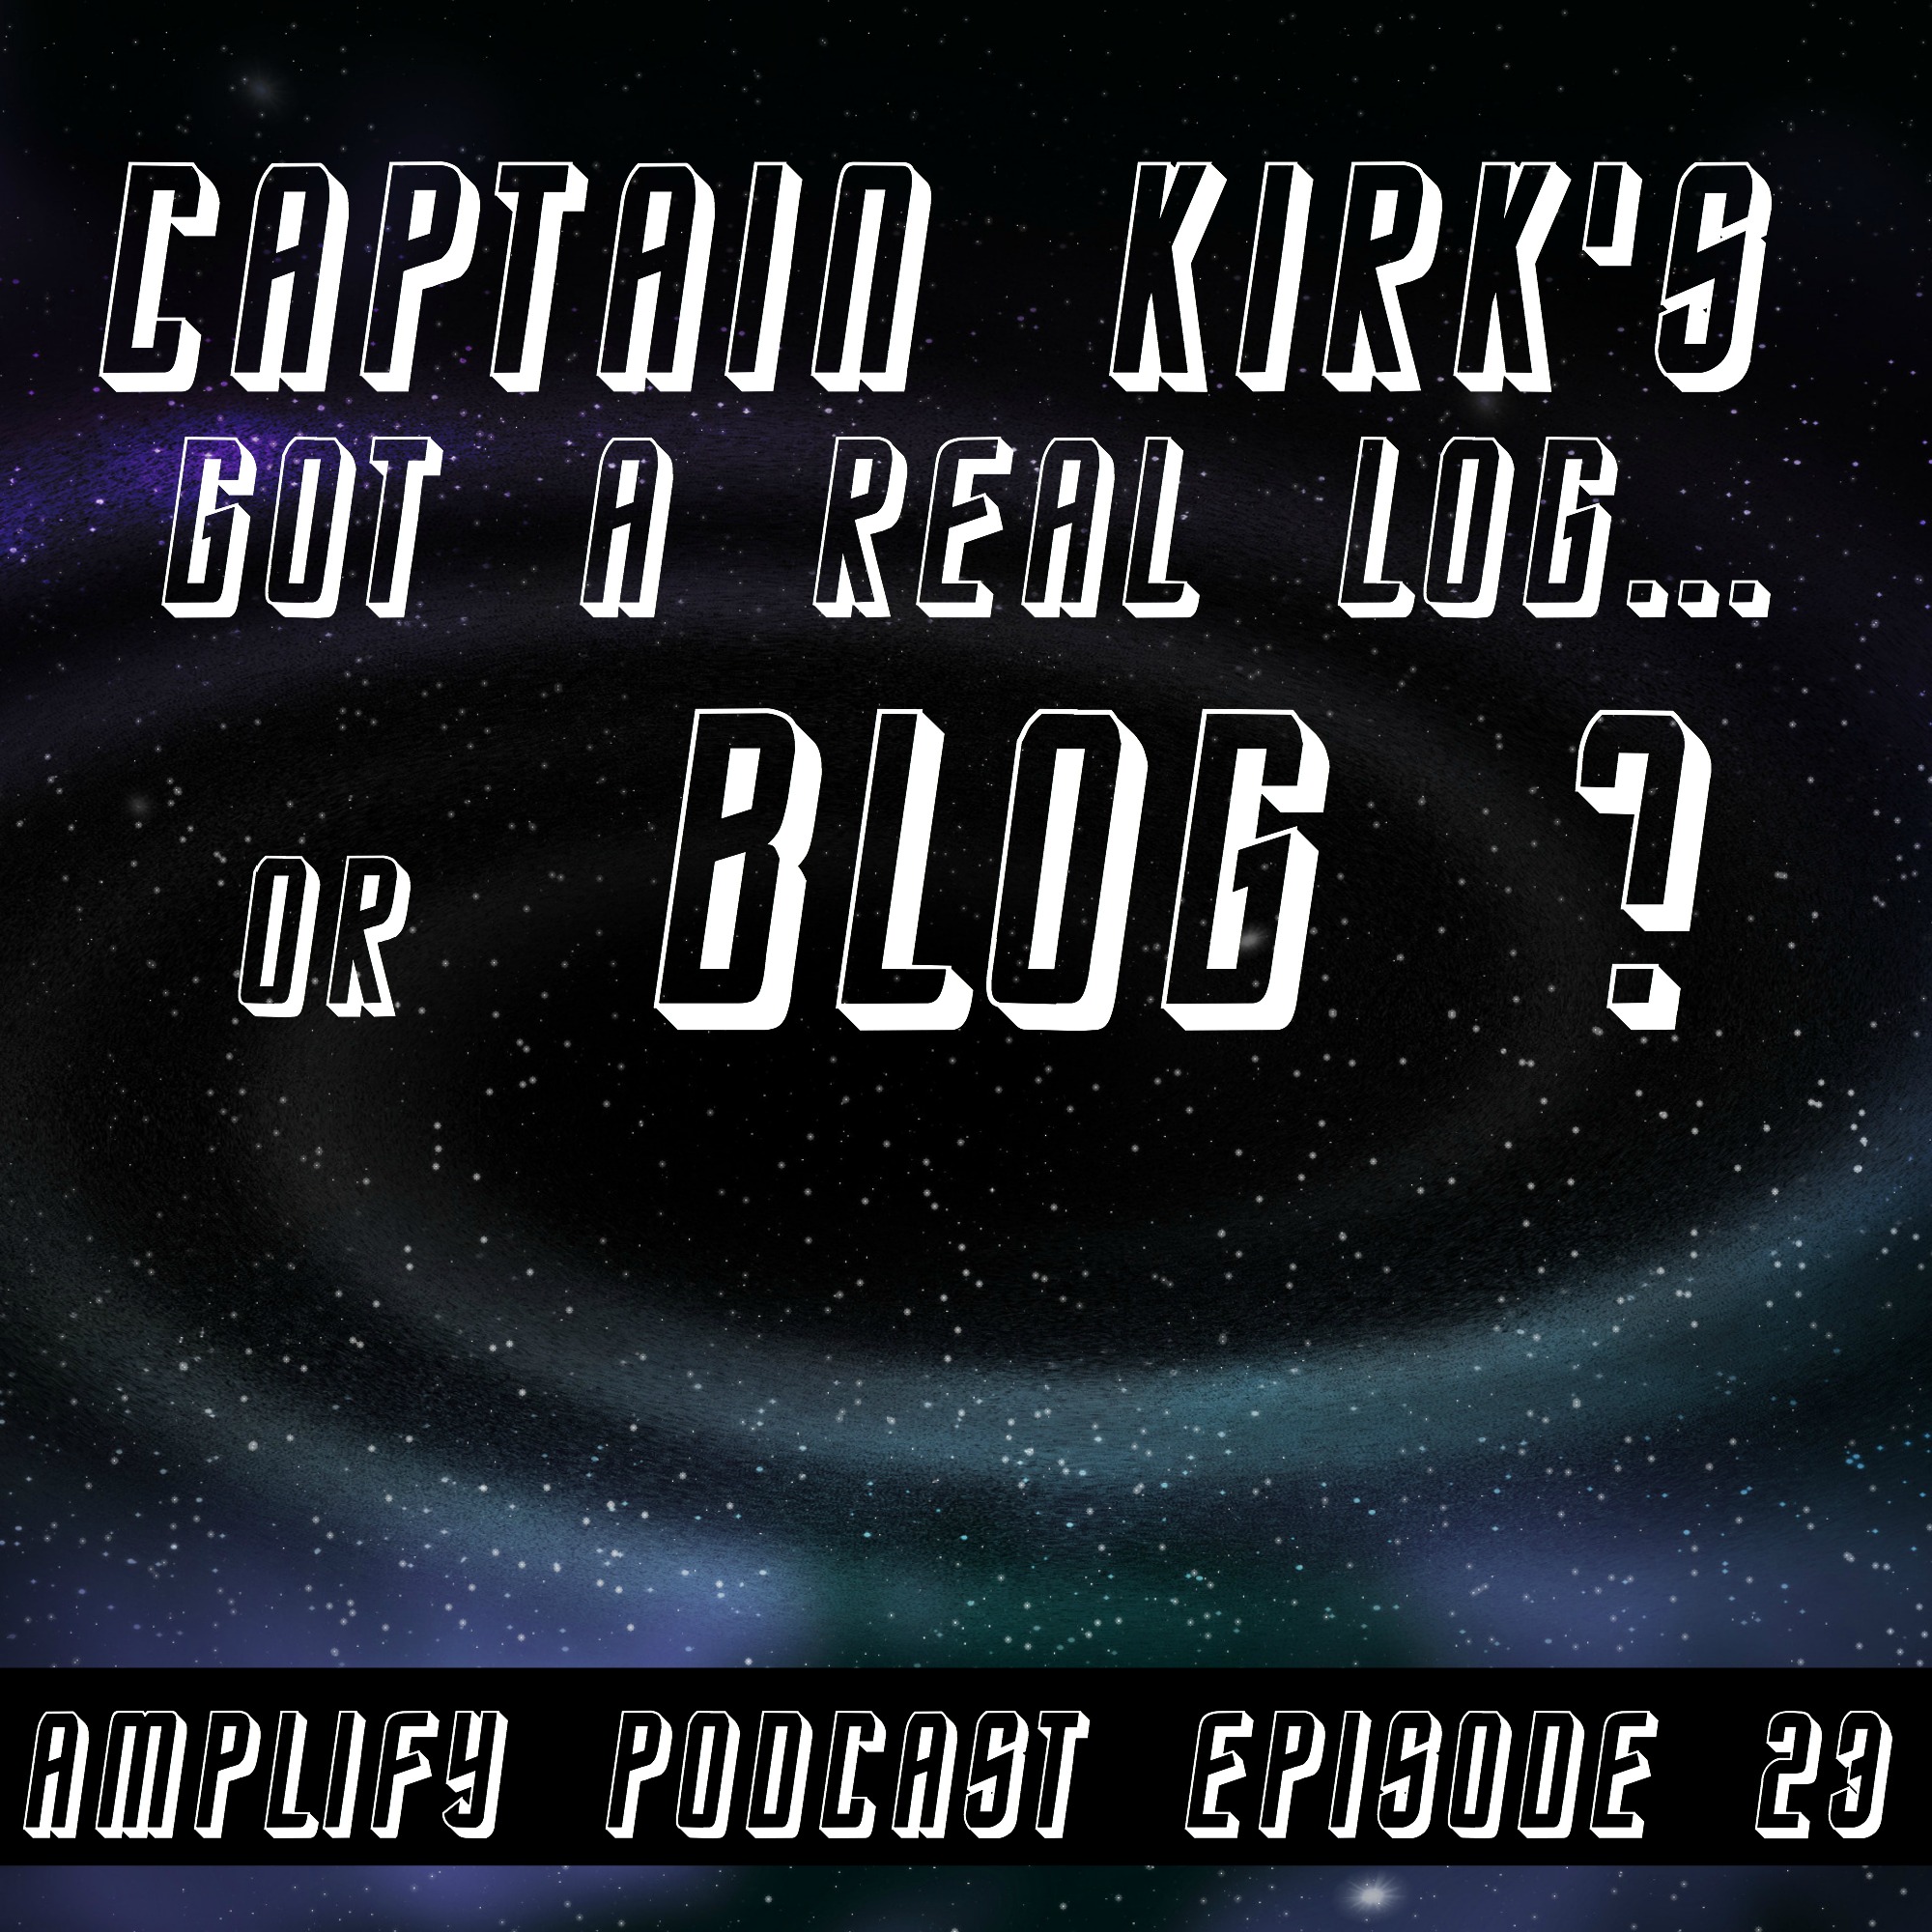 Capt Kirk’s got a real log. . . or blog?